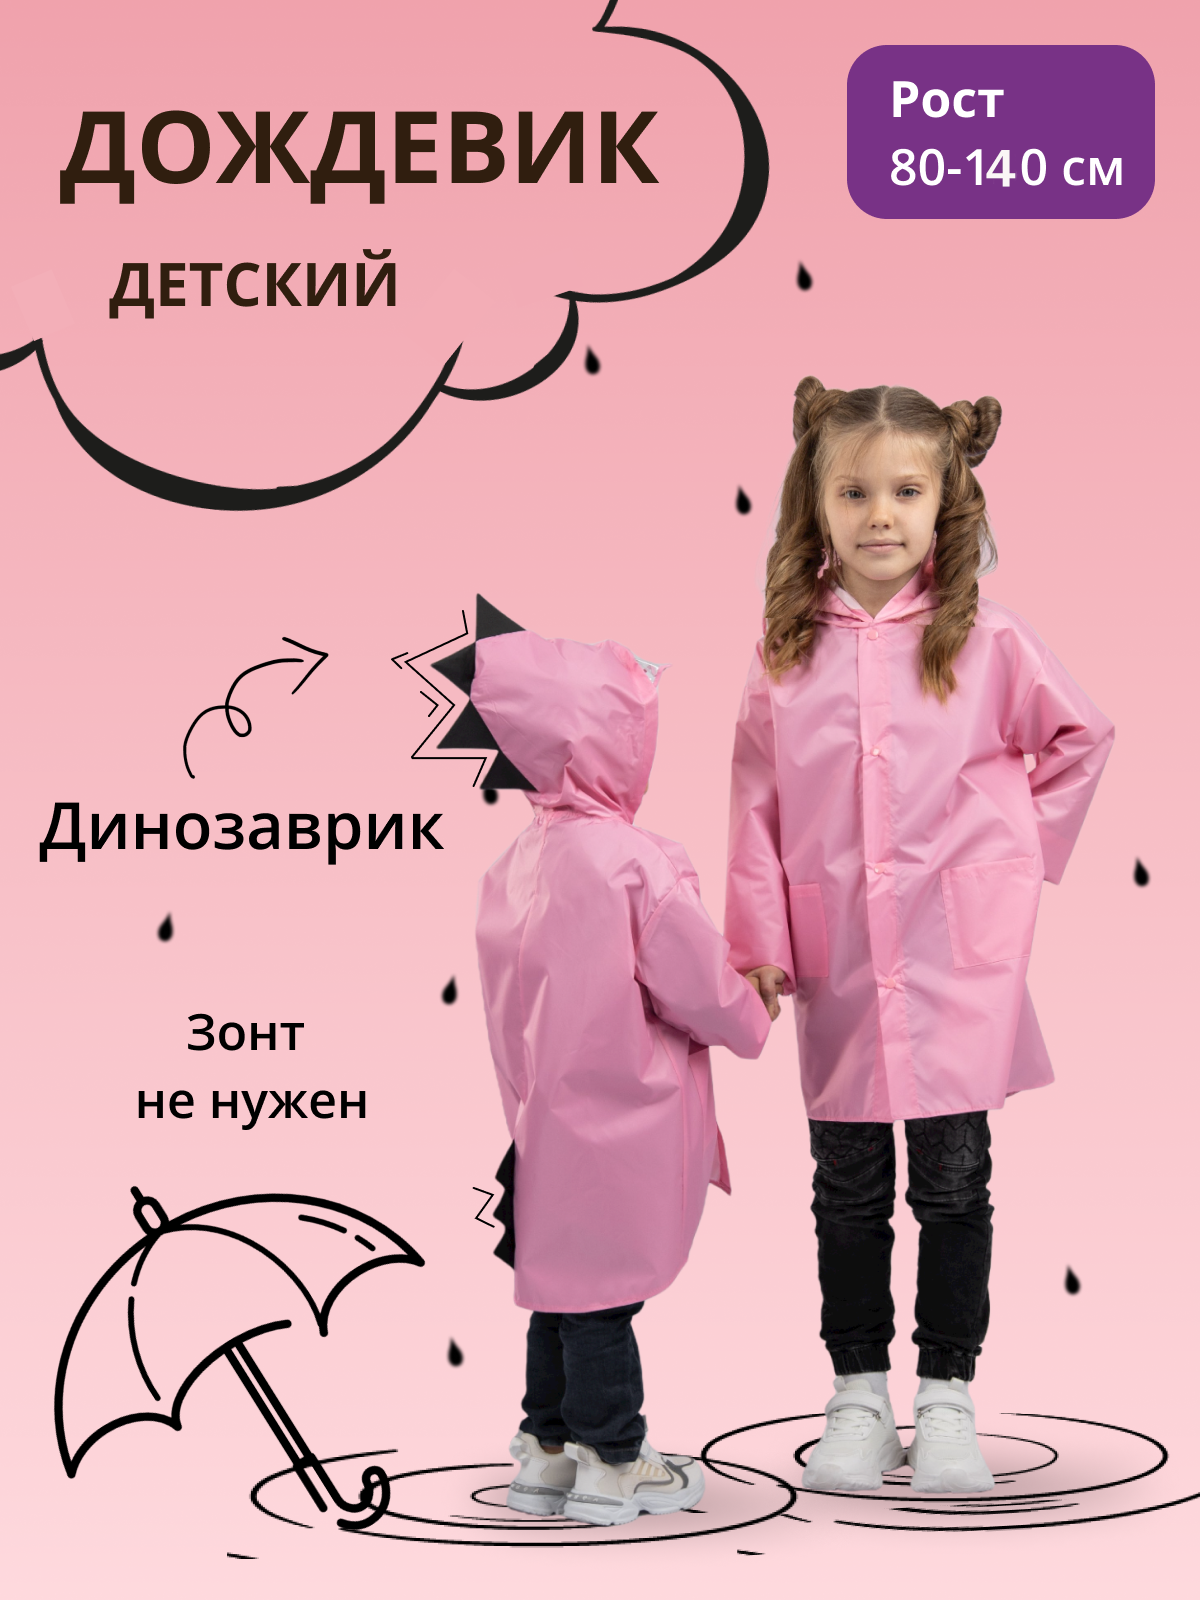 Дождевик детский Под дождем 122855957, розовый, 80